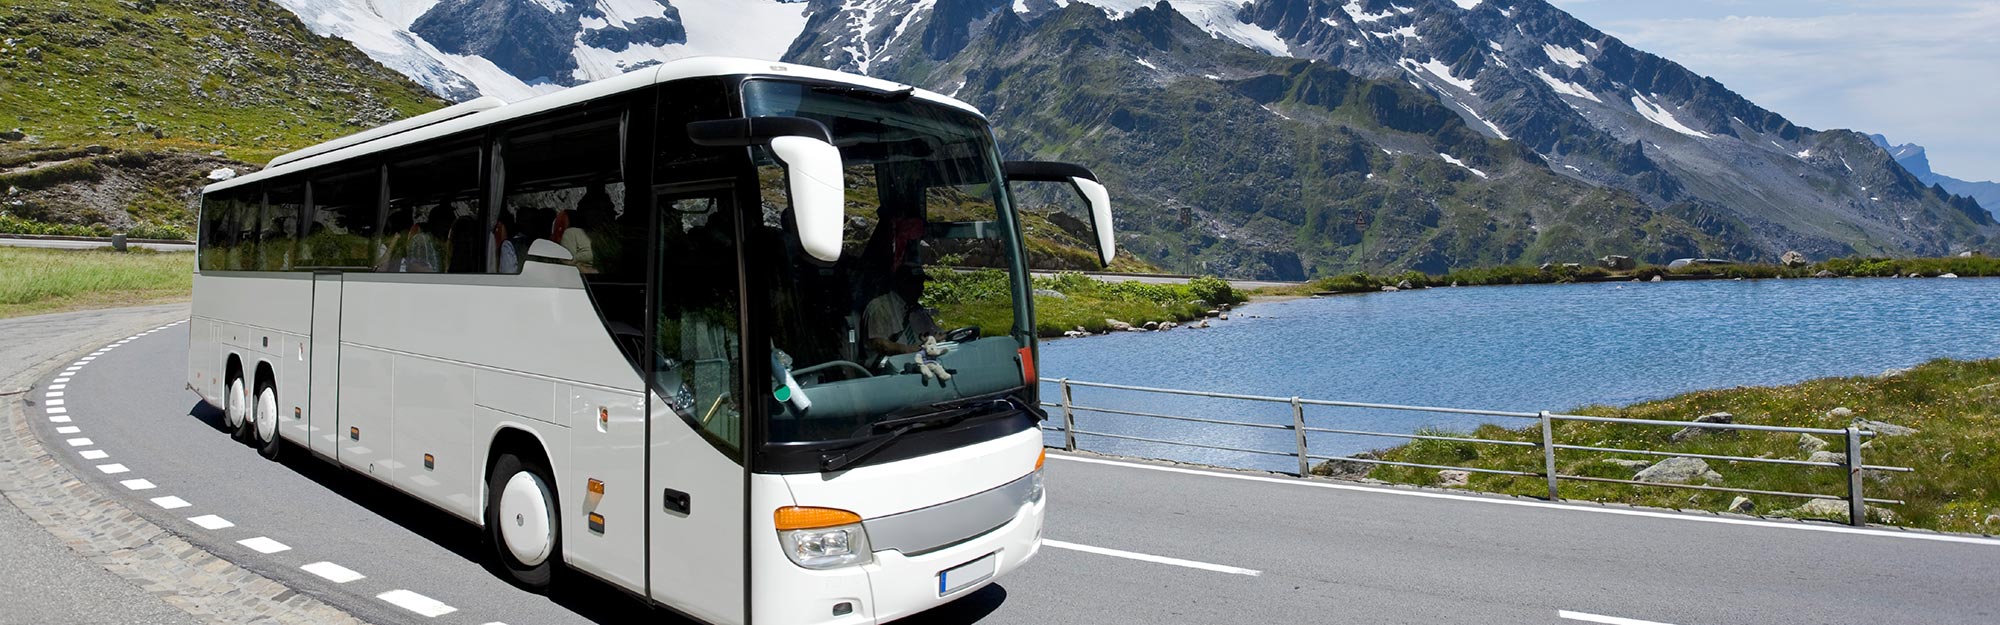 Автобусные туры, как отдых и способ путешествий